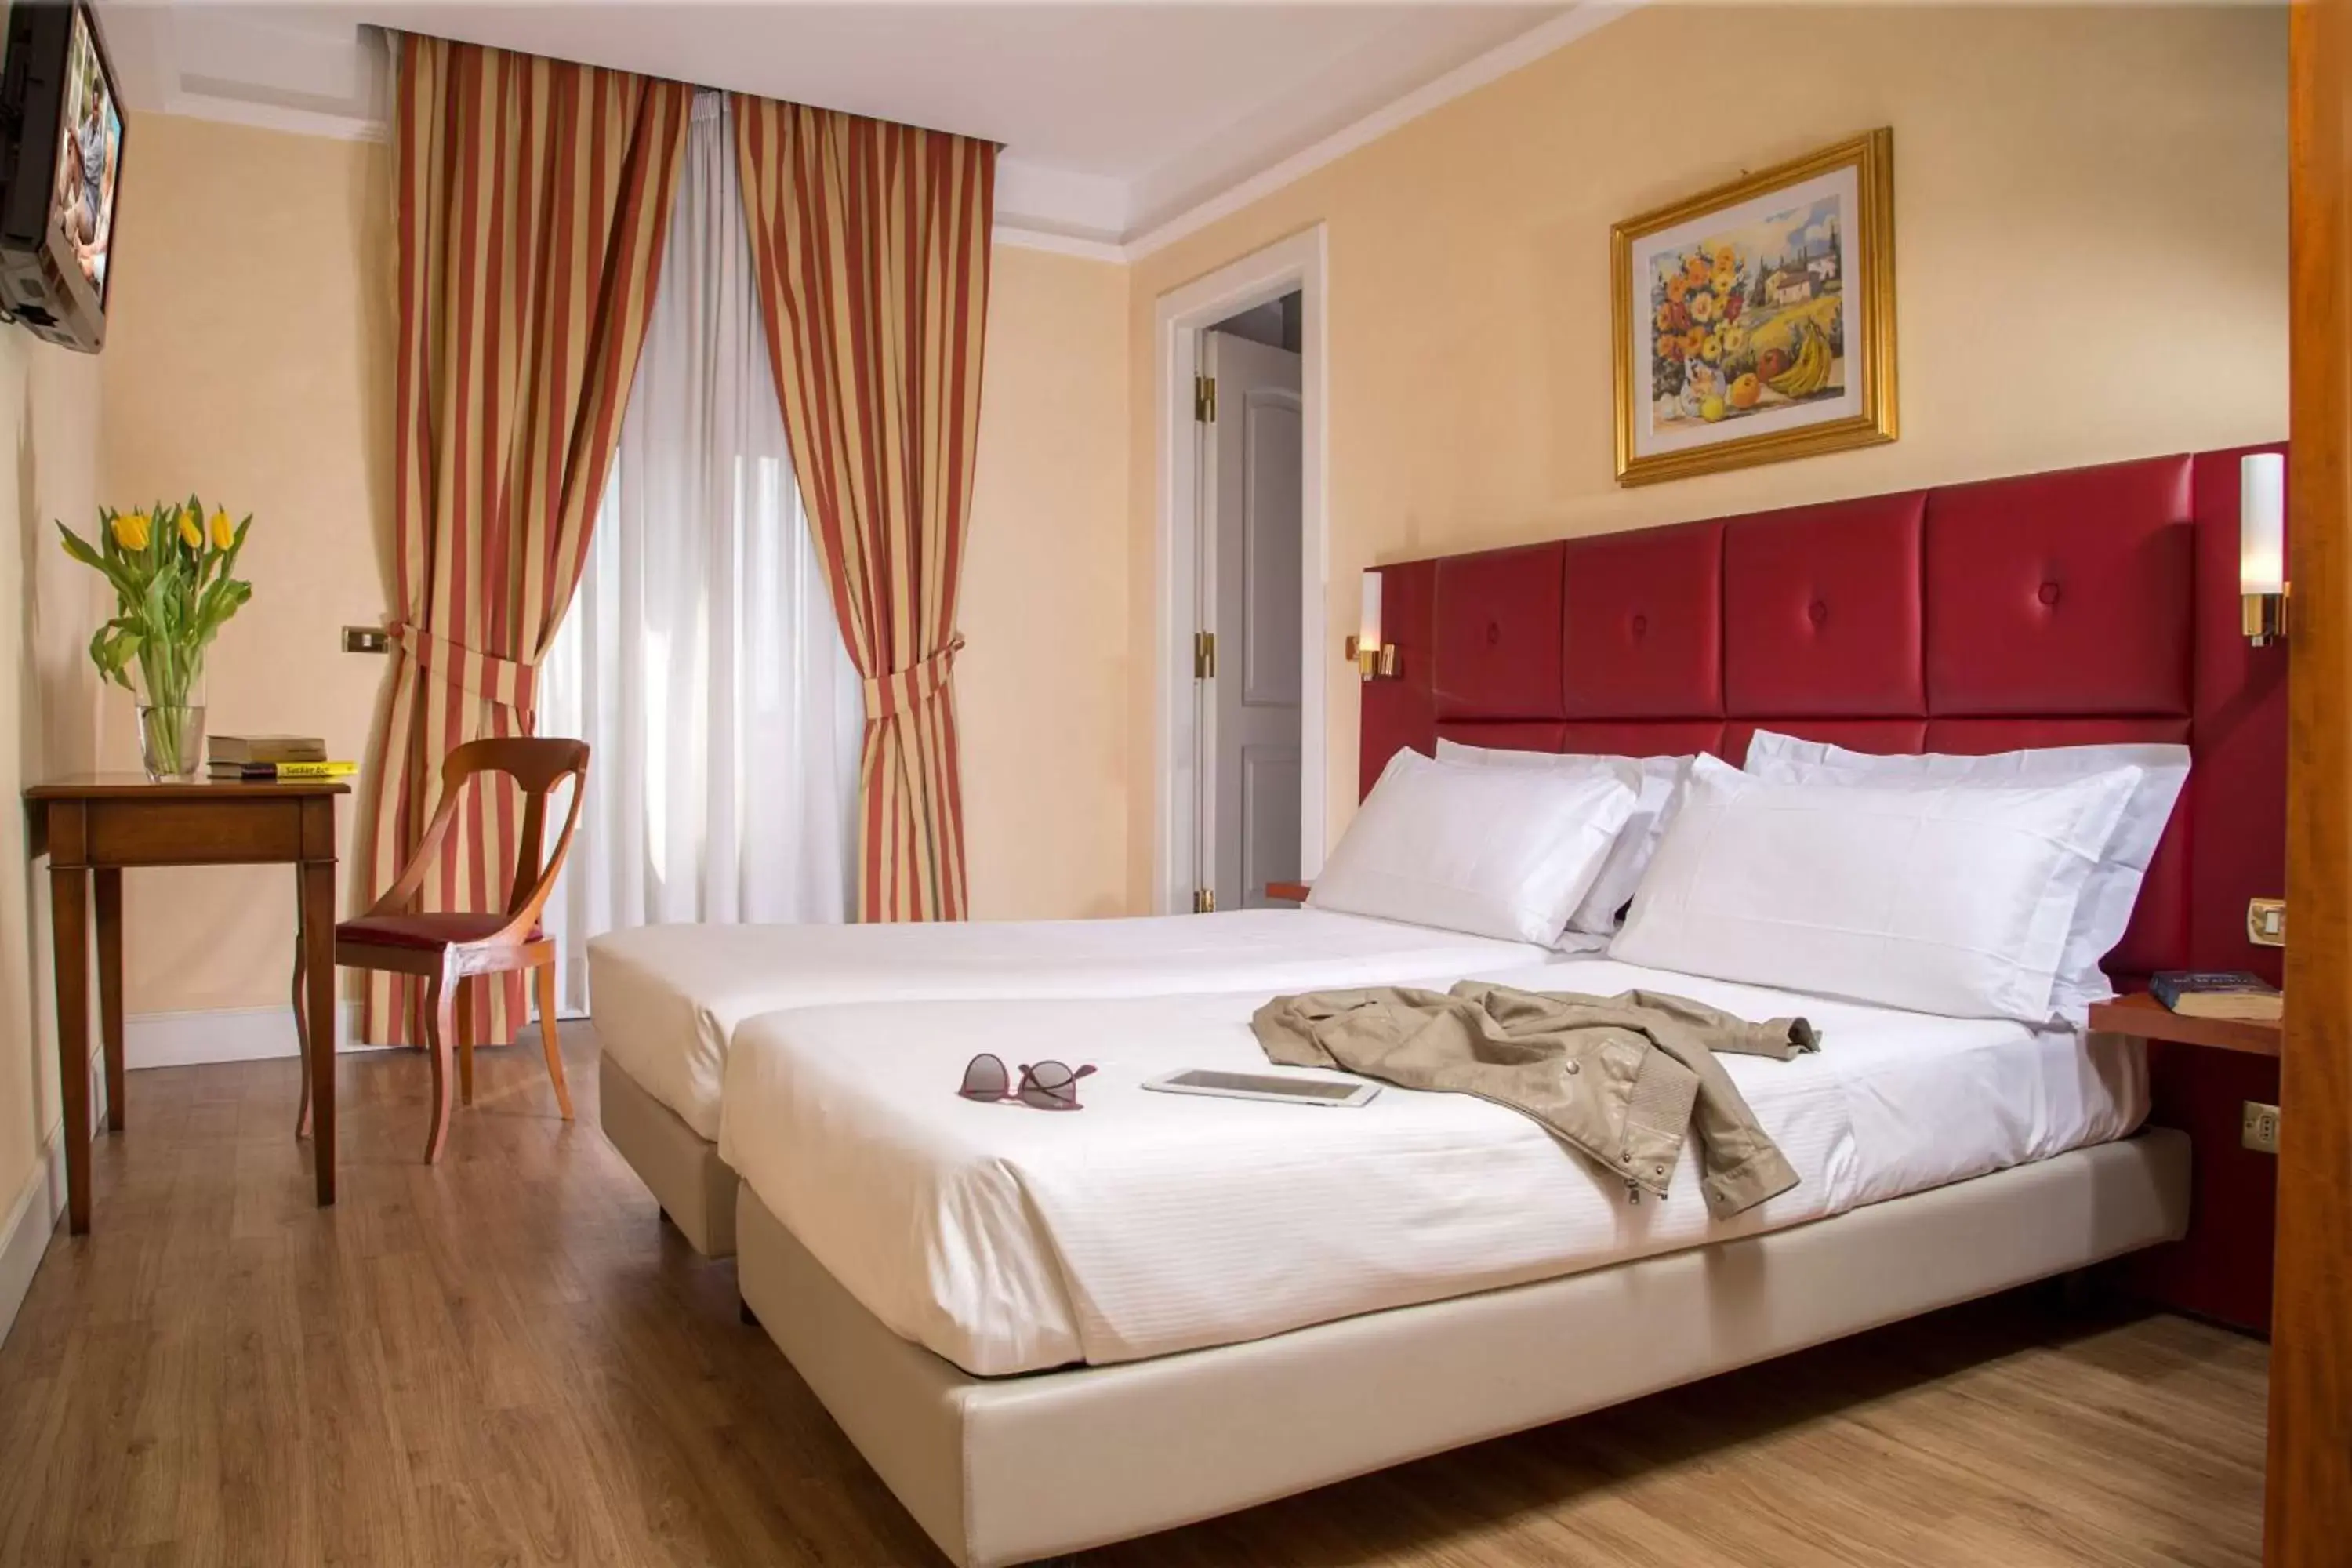 Bedroom, Bed in Best Western Hotel Astrid